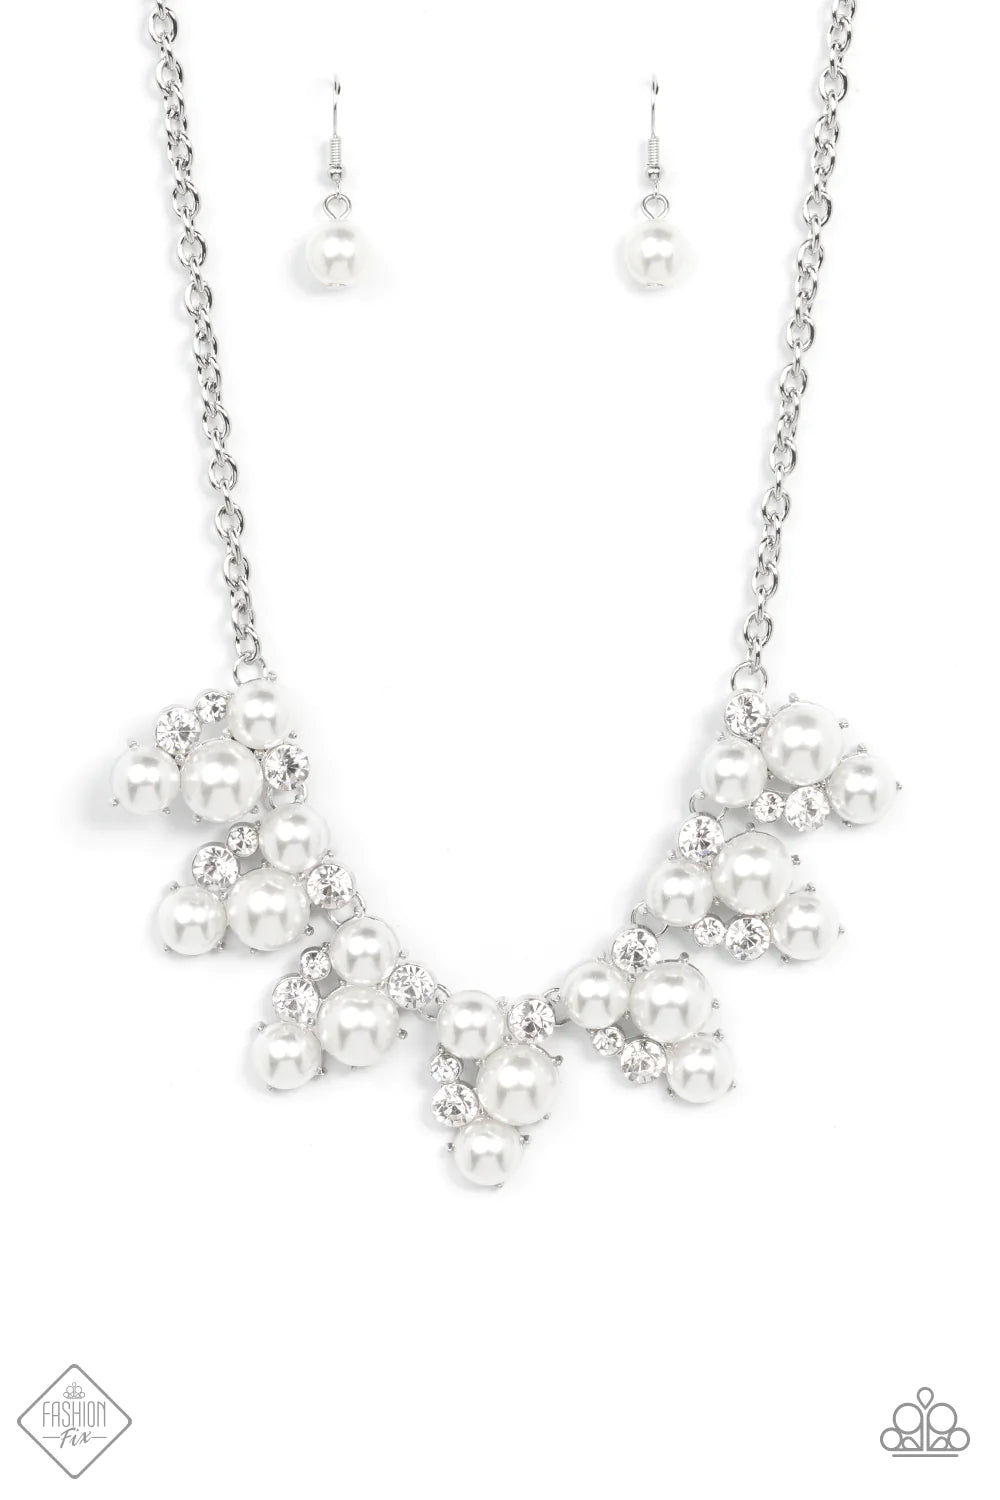 Renown Refinement - White (Pearl) Necklace (FFA-1021)